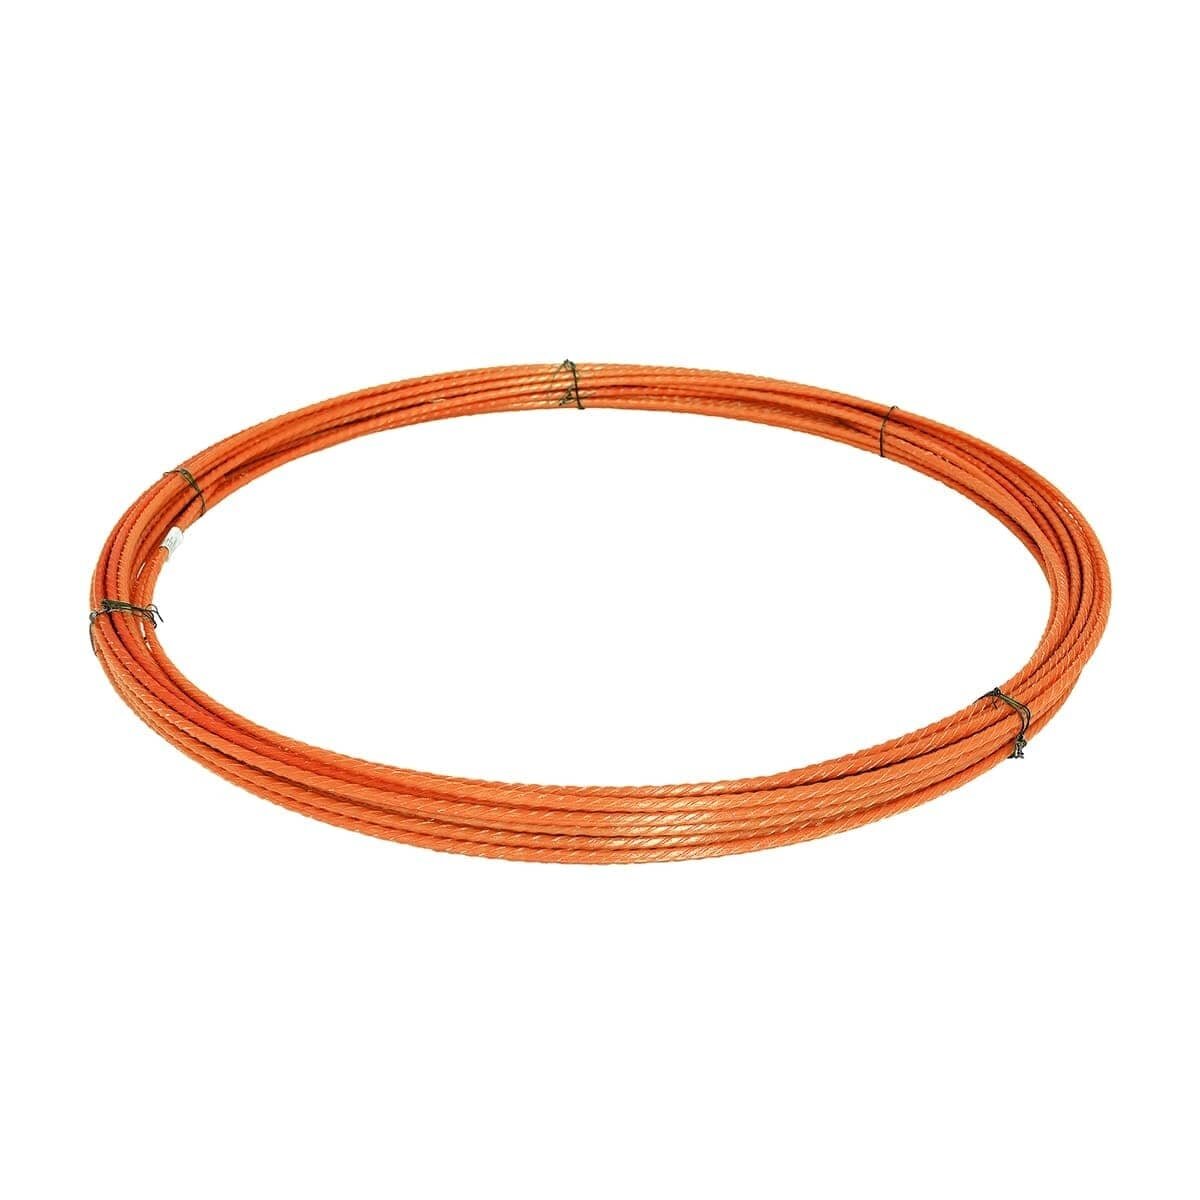 Протяжка кабельная 45ммХ5 метров оранжевый Электро